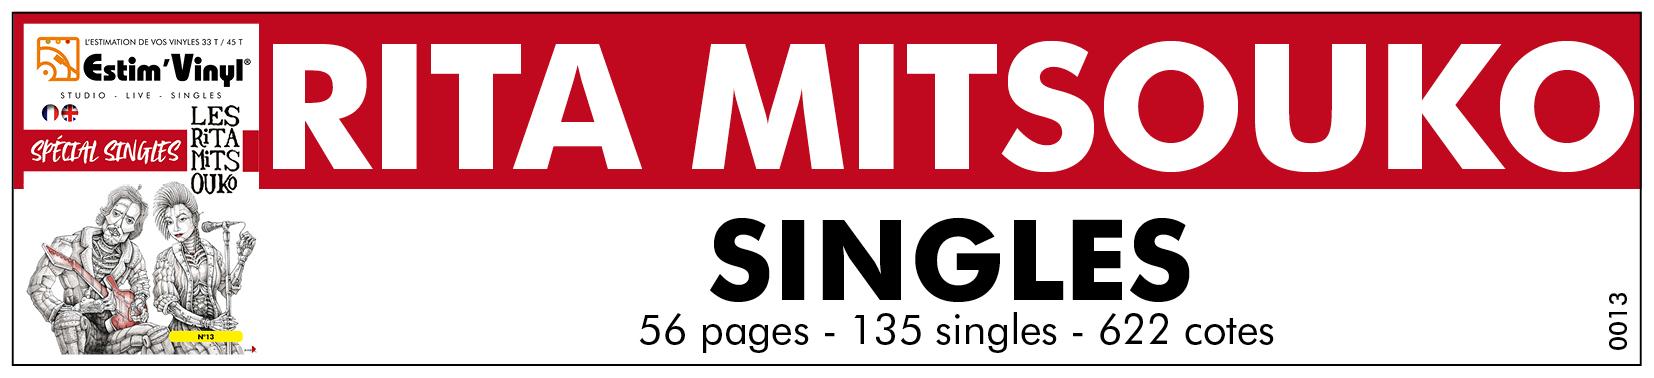 Retrouvez la valeurs, la cote des singles 45 tours du groupe Rita Mitsouko, www.estimvinyl.com, l'estimation de vos vinyles